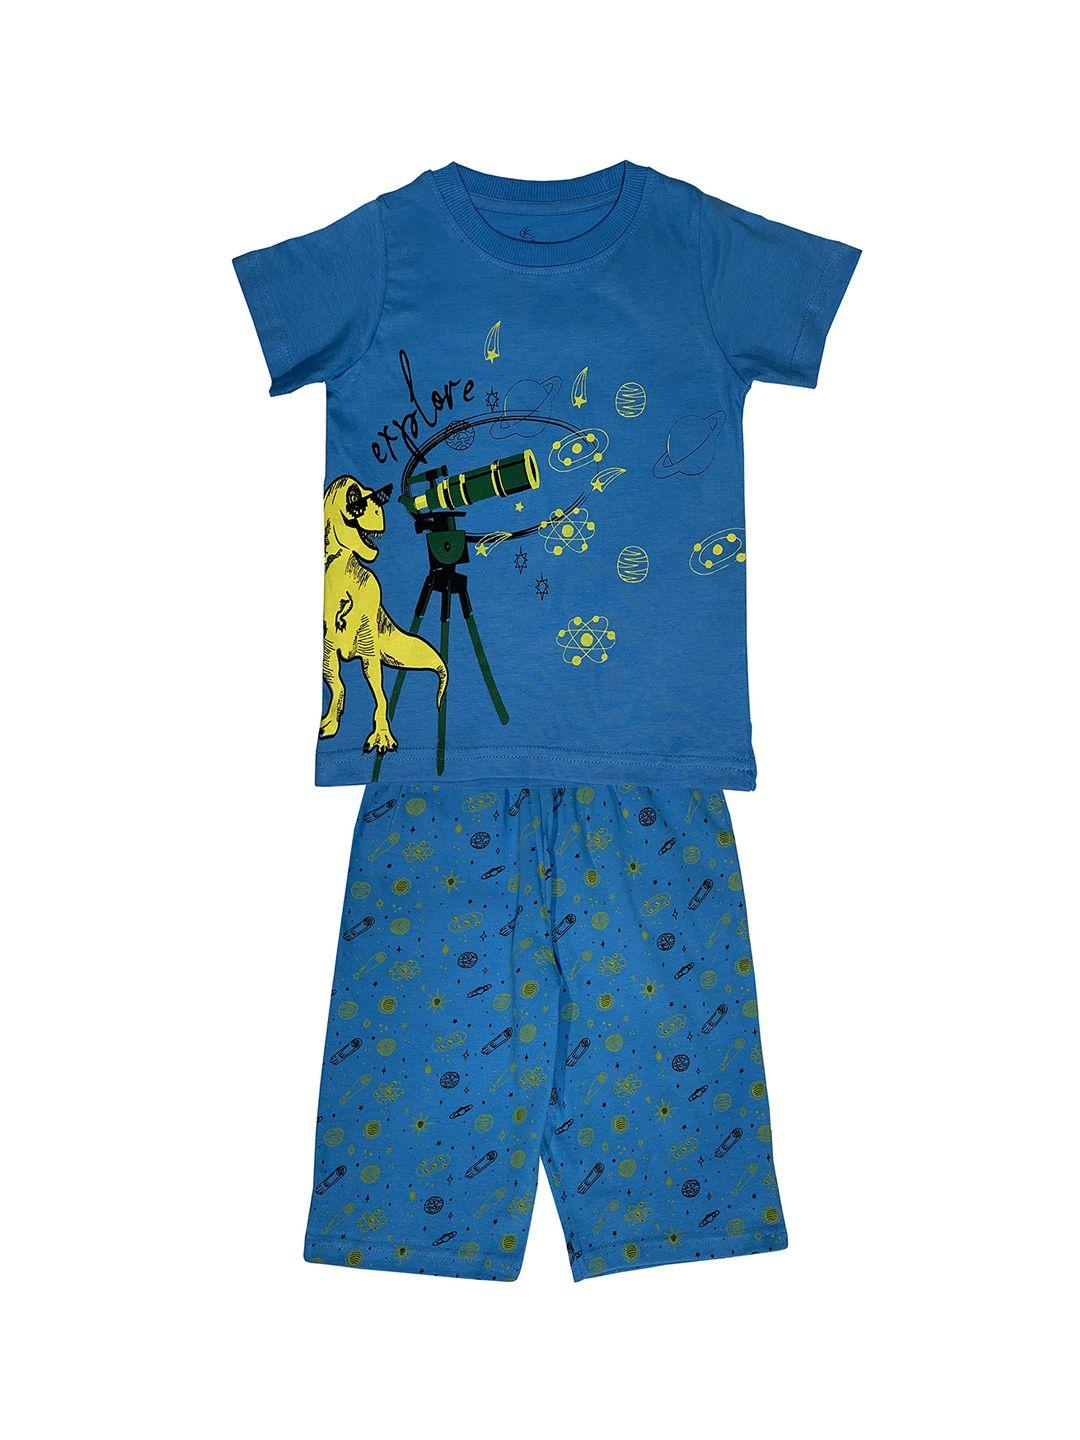 kiddopanti boys blue printed night suit